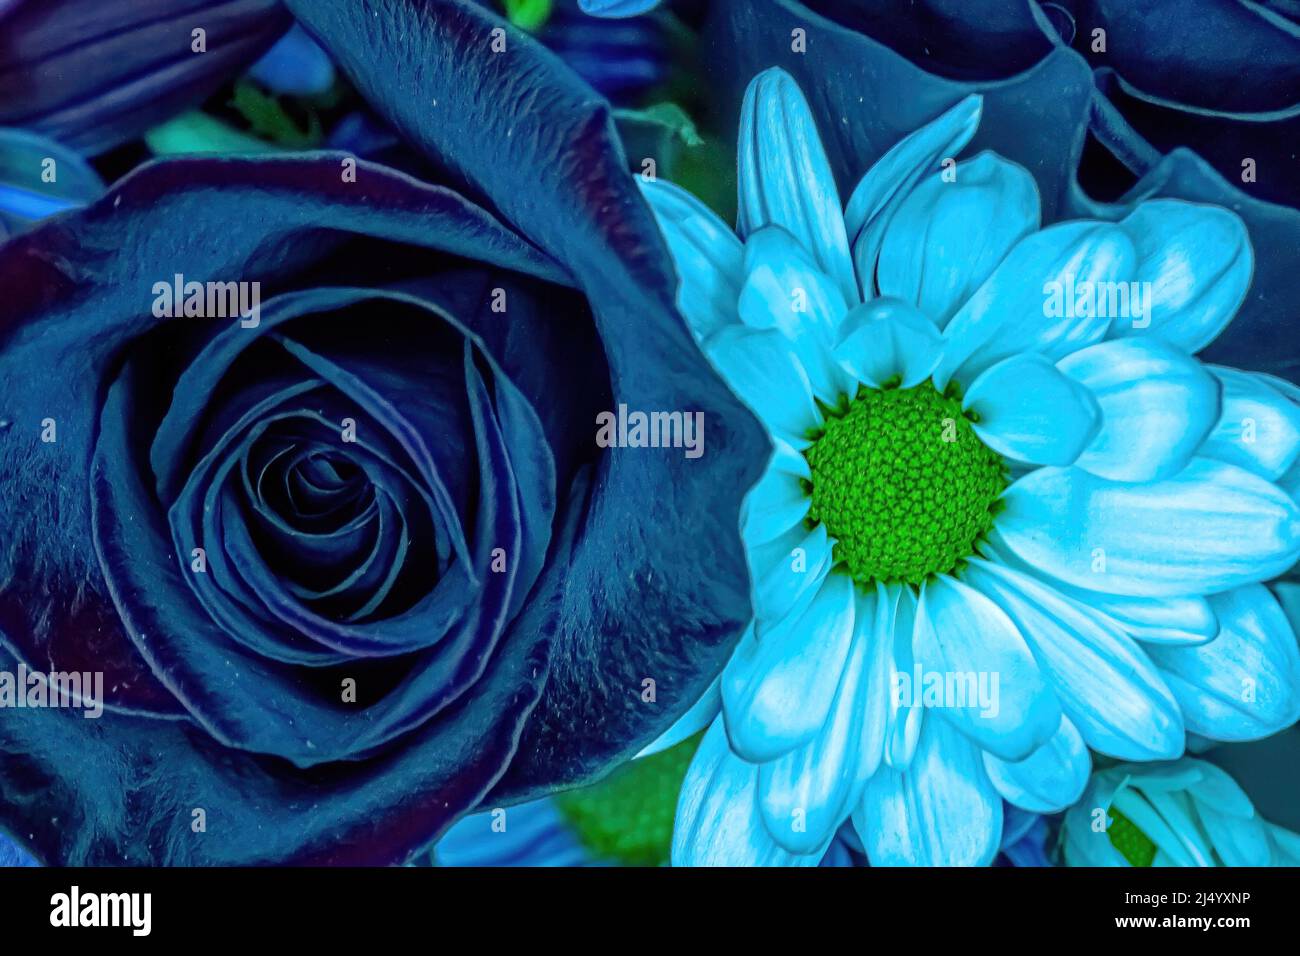 Farbenfrohe Ansicht von Blumen in einem Blumenstrauß Stockfoto